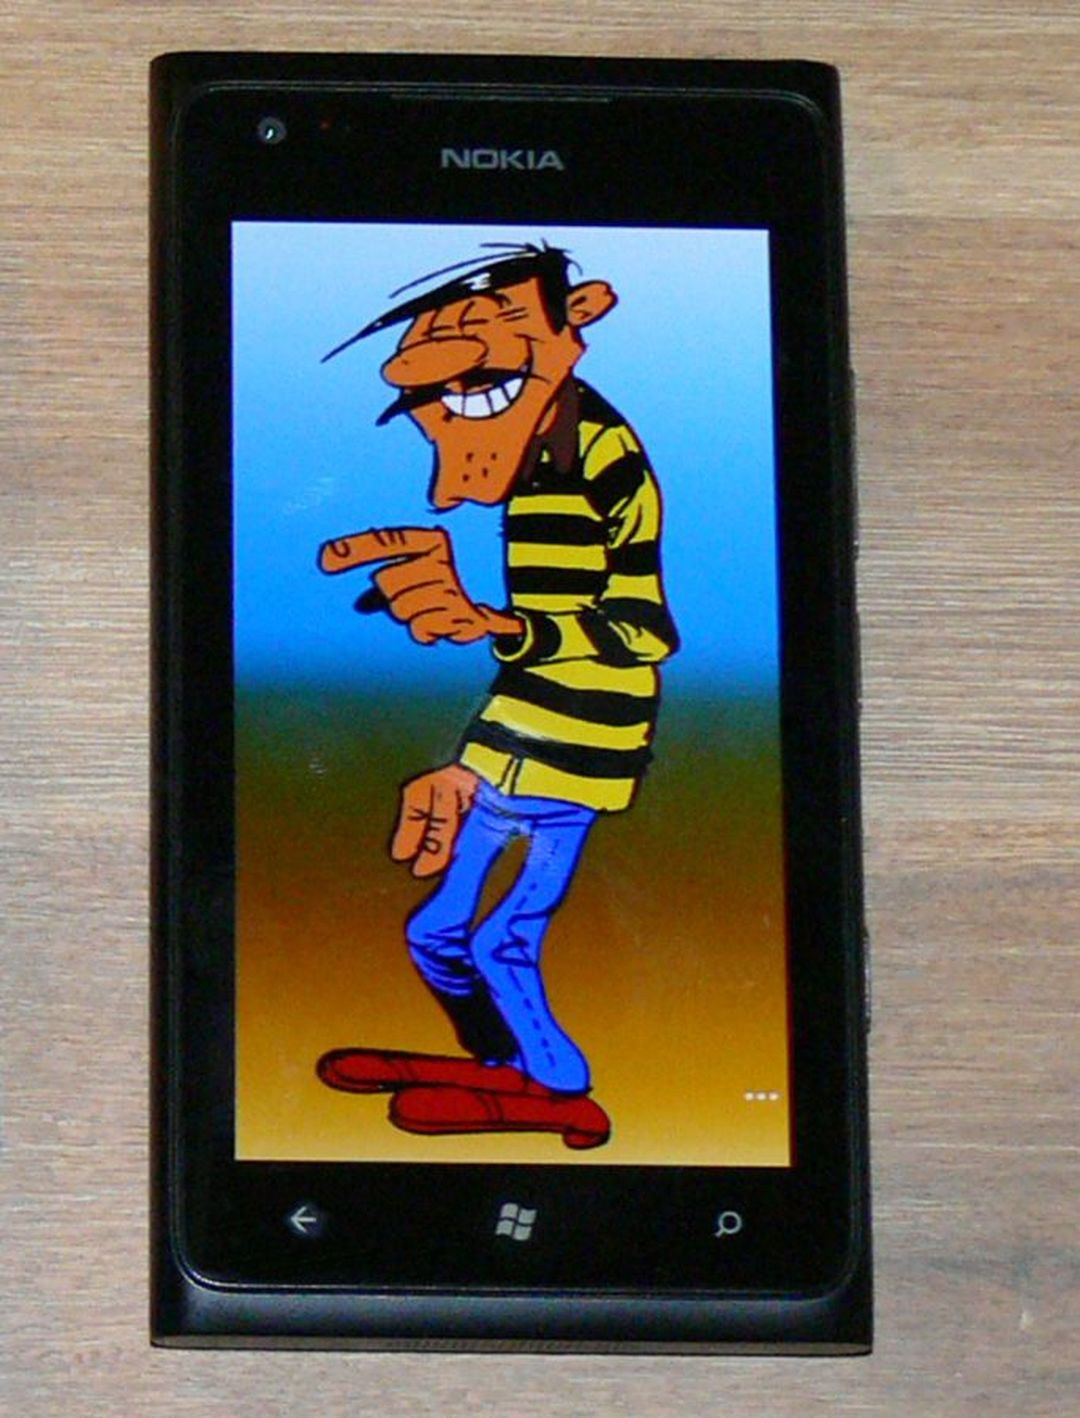 Nokia-Lumia900-Bandit4 - SmartTechNews